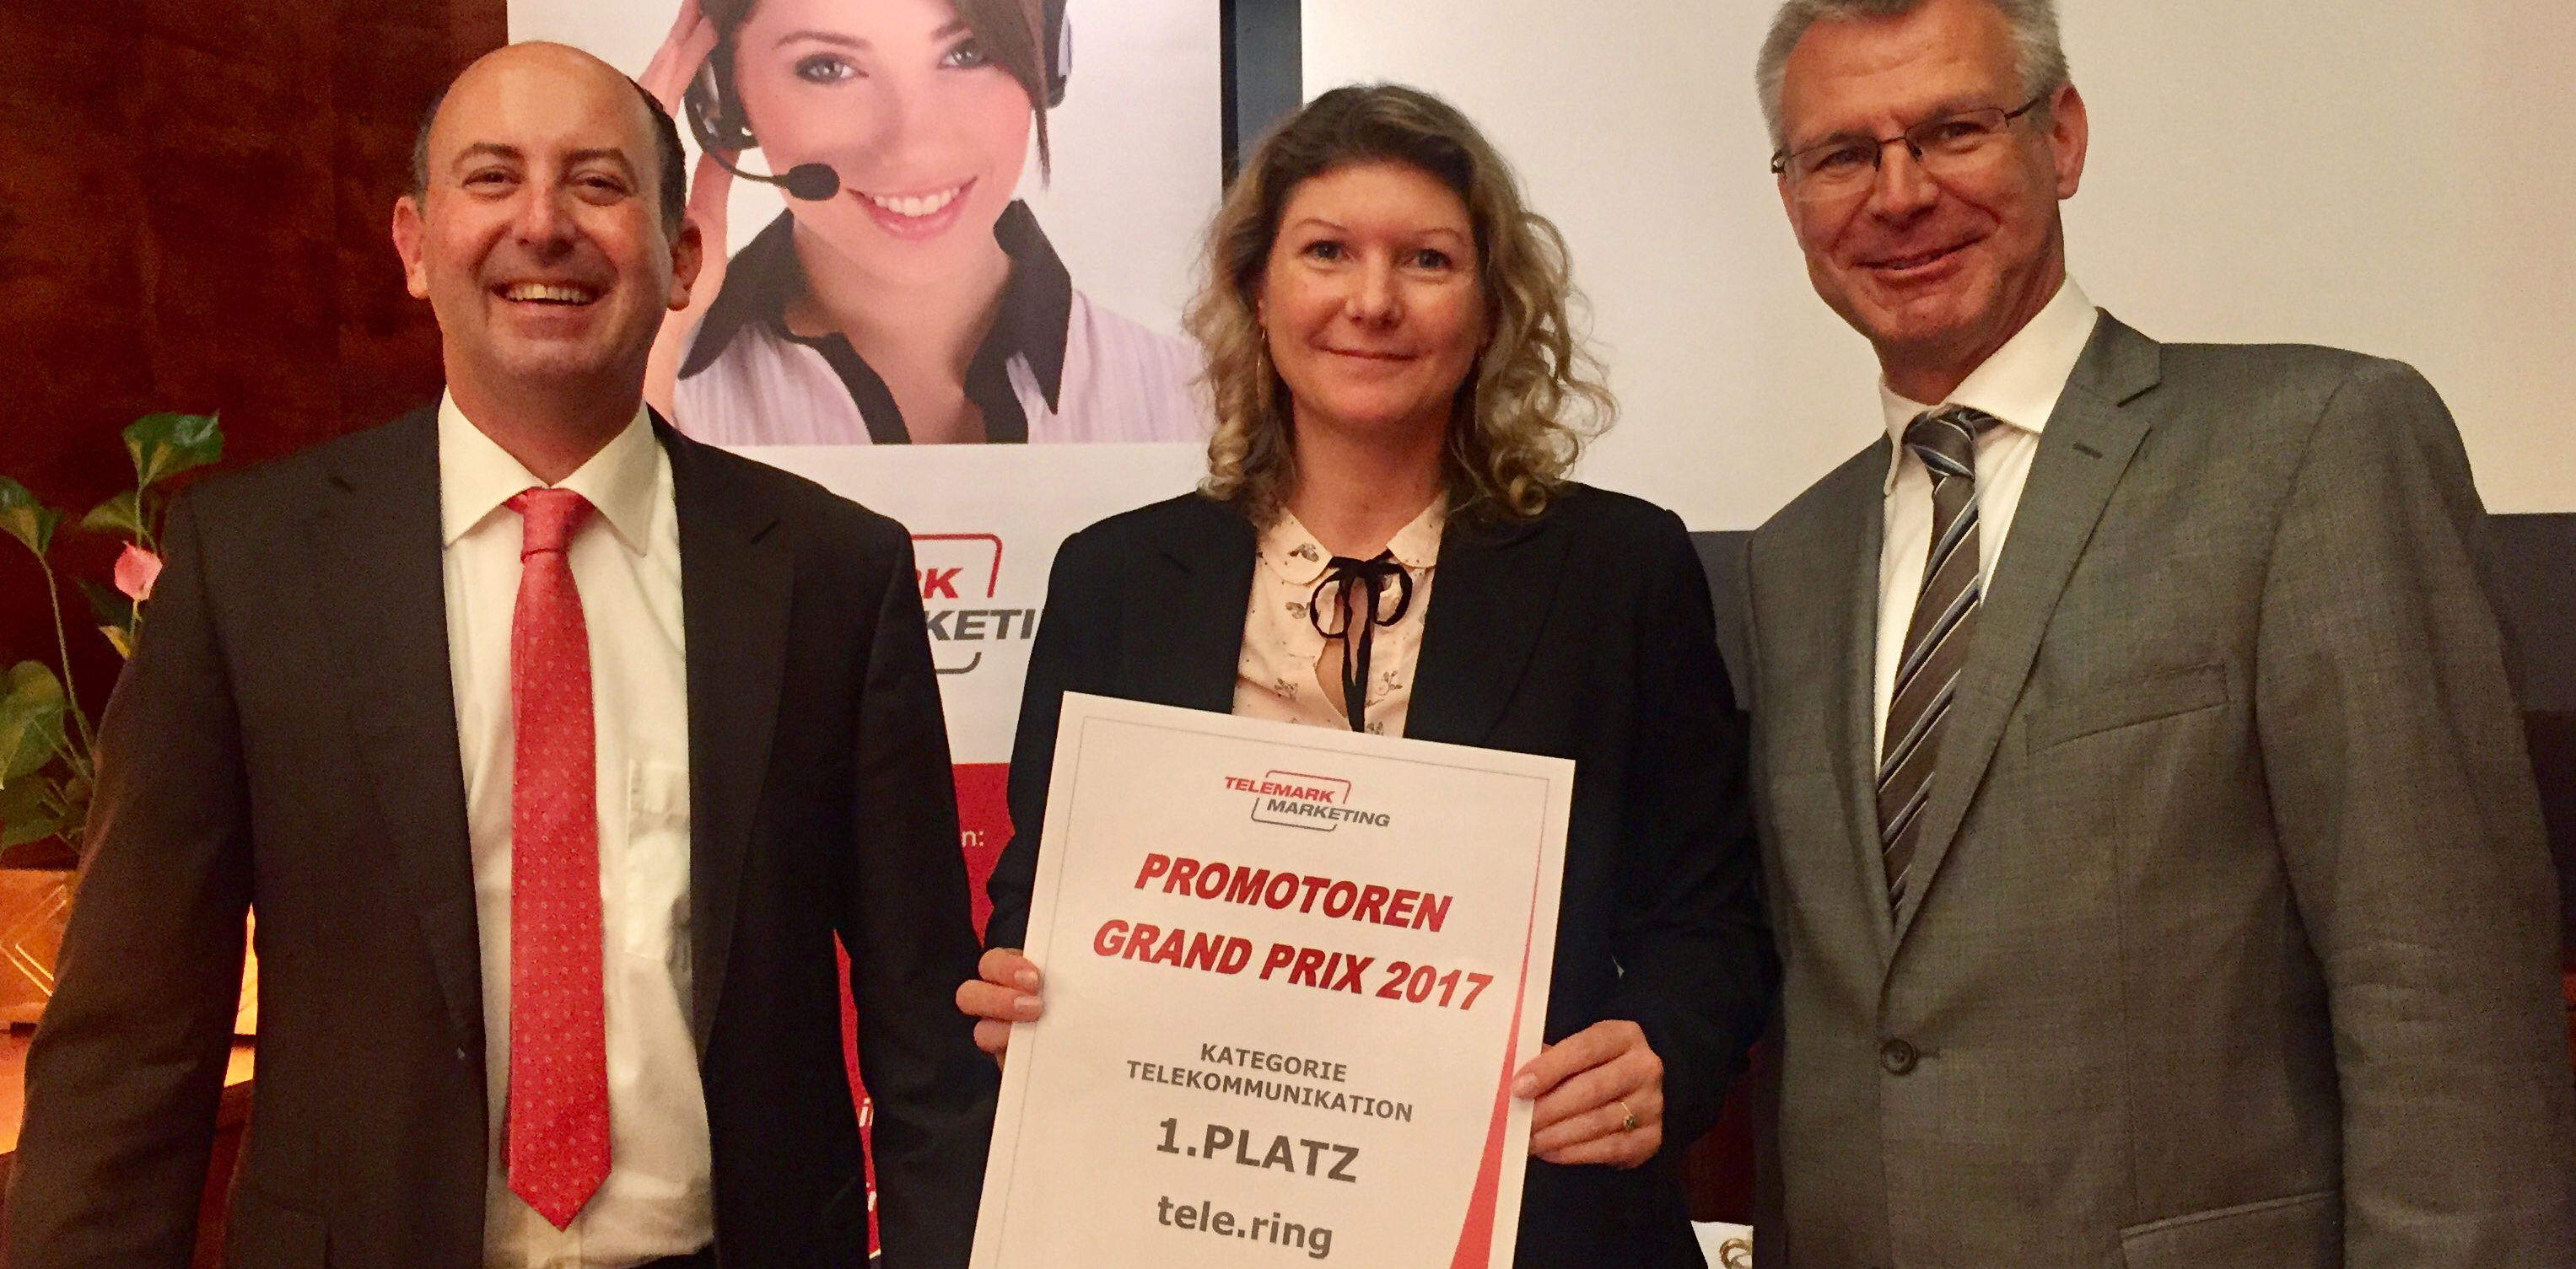 Weiterempfehlungspreis „Promotoren Grand Prix 2017“: 1. Platz für tele.ring, Platz 2 für T-Mobile